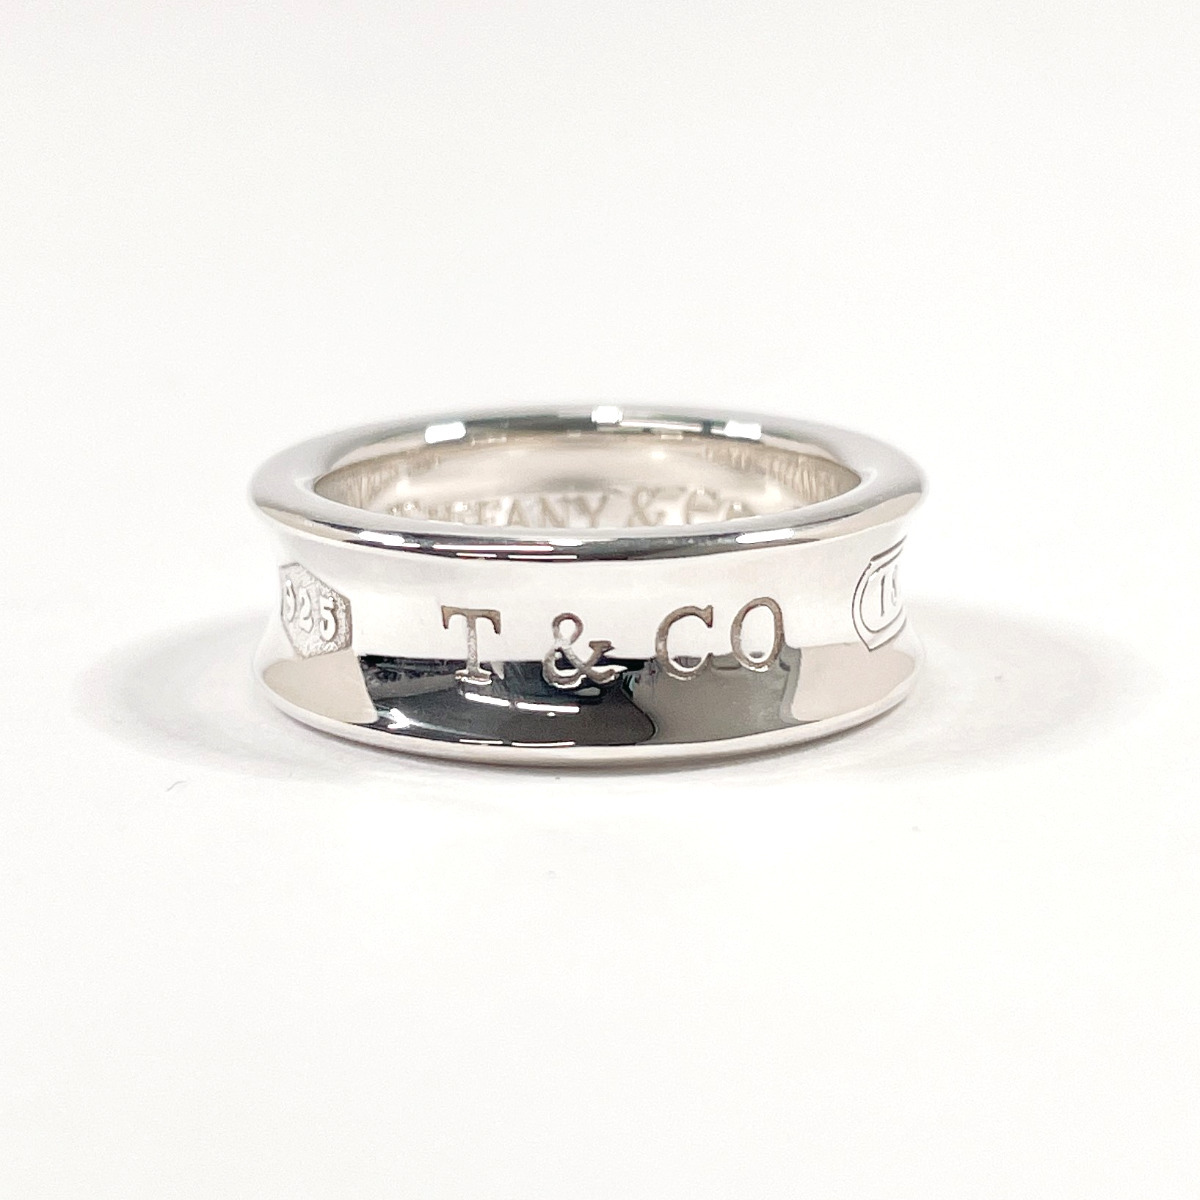 11.5号 ティファニー TIFFANY&Co. リング・指輪 1837 シルバー925 アクセサリー ジュエリー 新品仕上げ済み